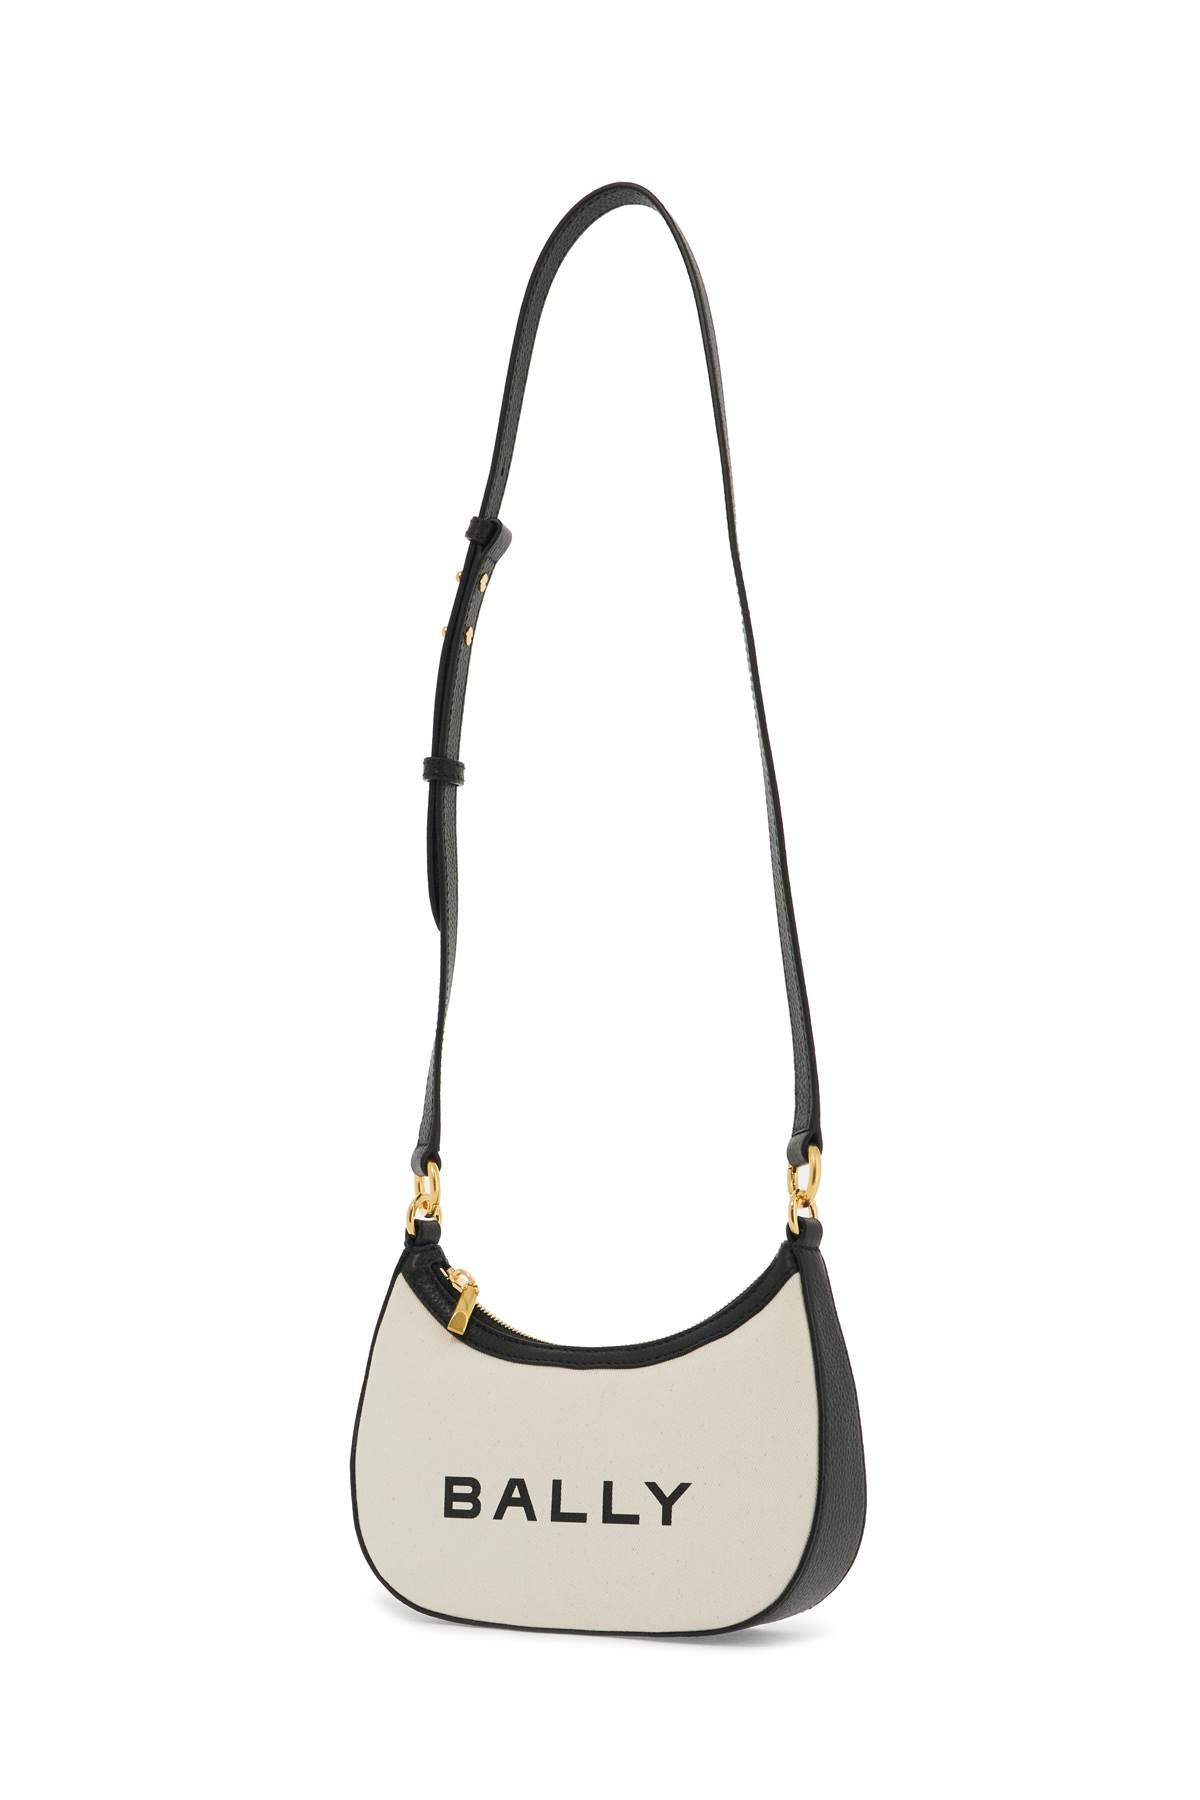 Bally Ellipse Bar Shoulder Bag   Neutral